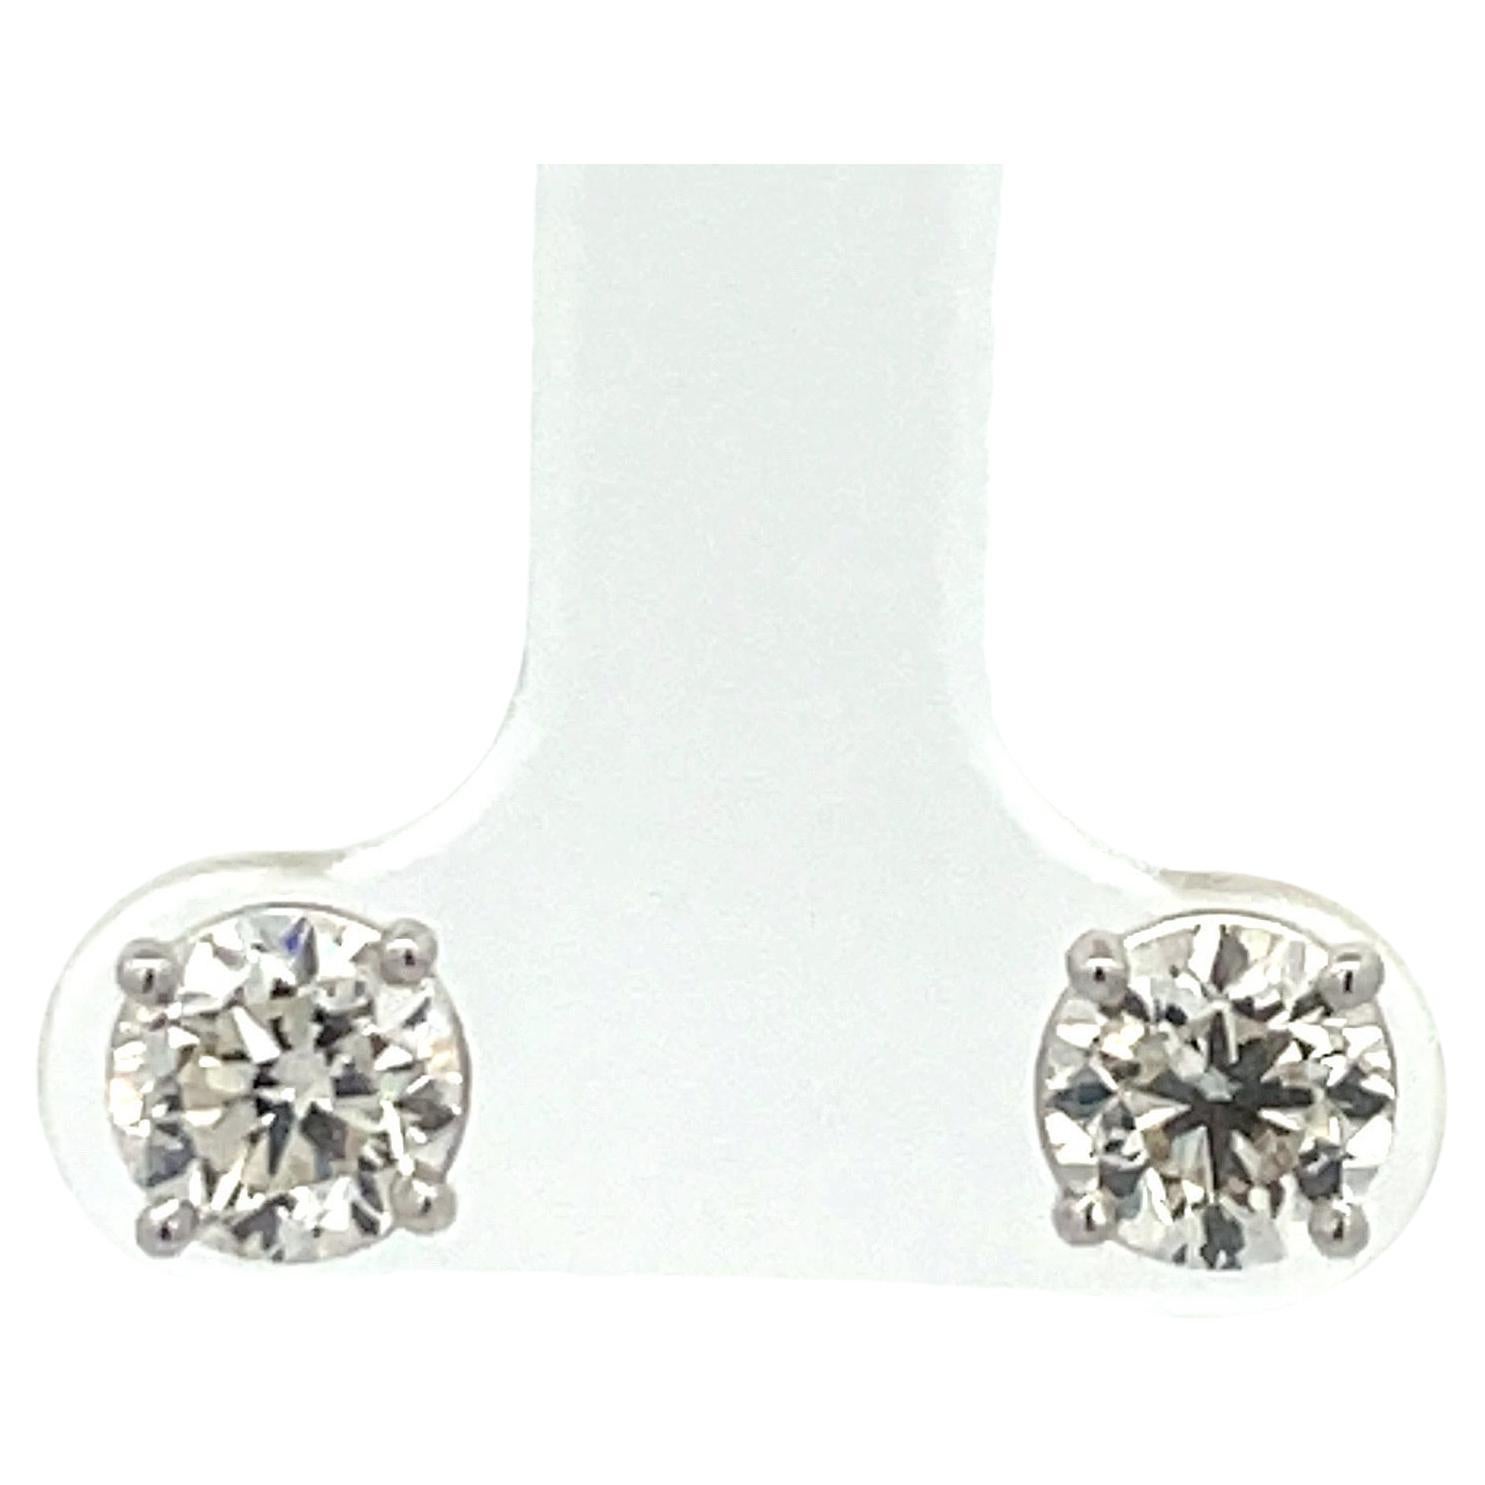 Diamond Stud Earring 1.86 Carats I-J VS2 14 Karat White Gold Basket Setting For Sale